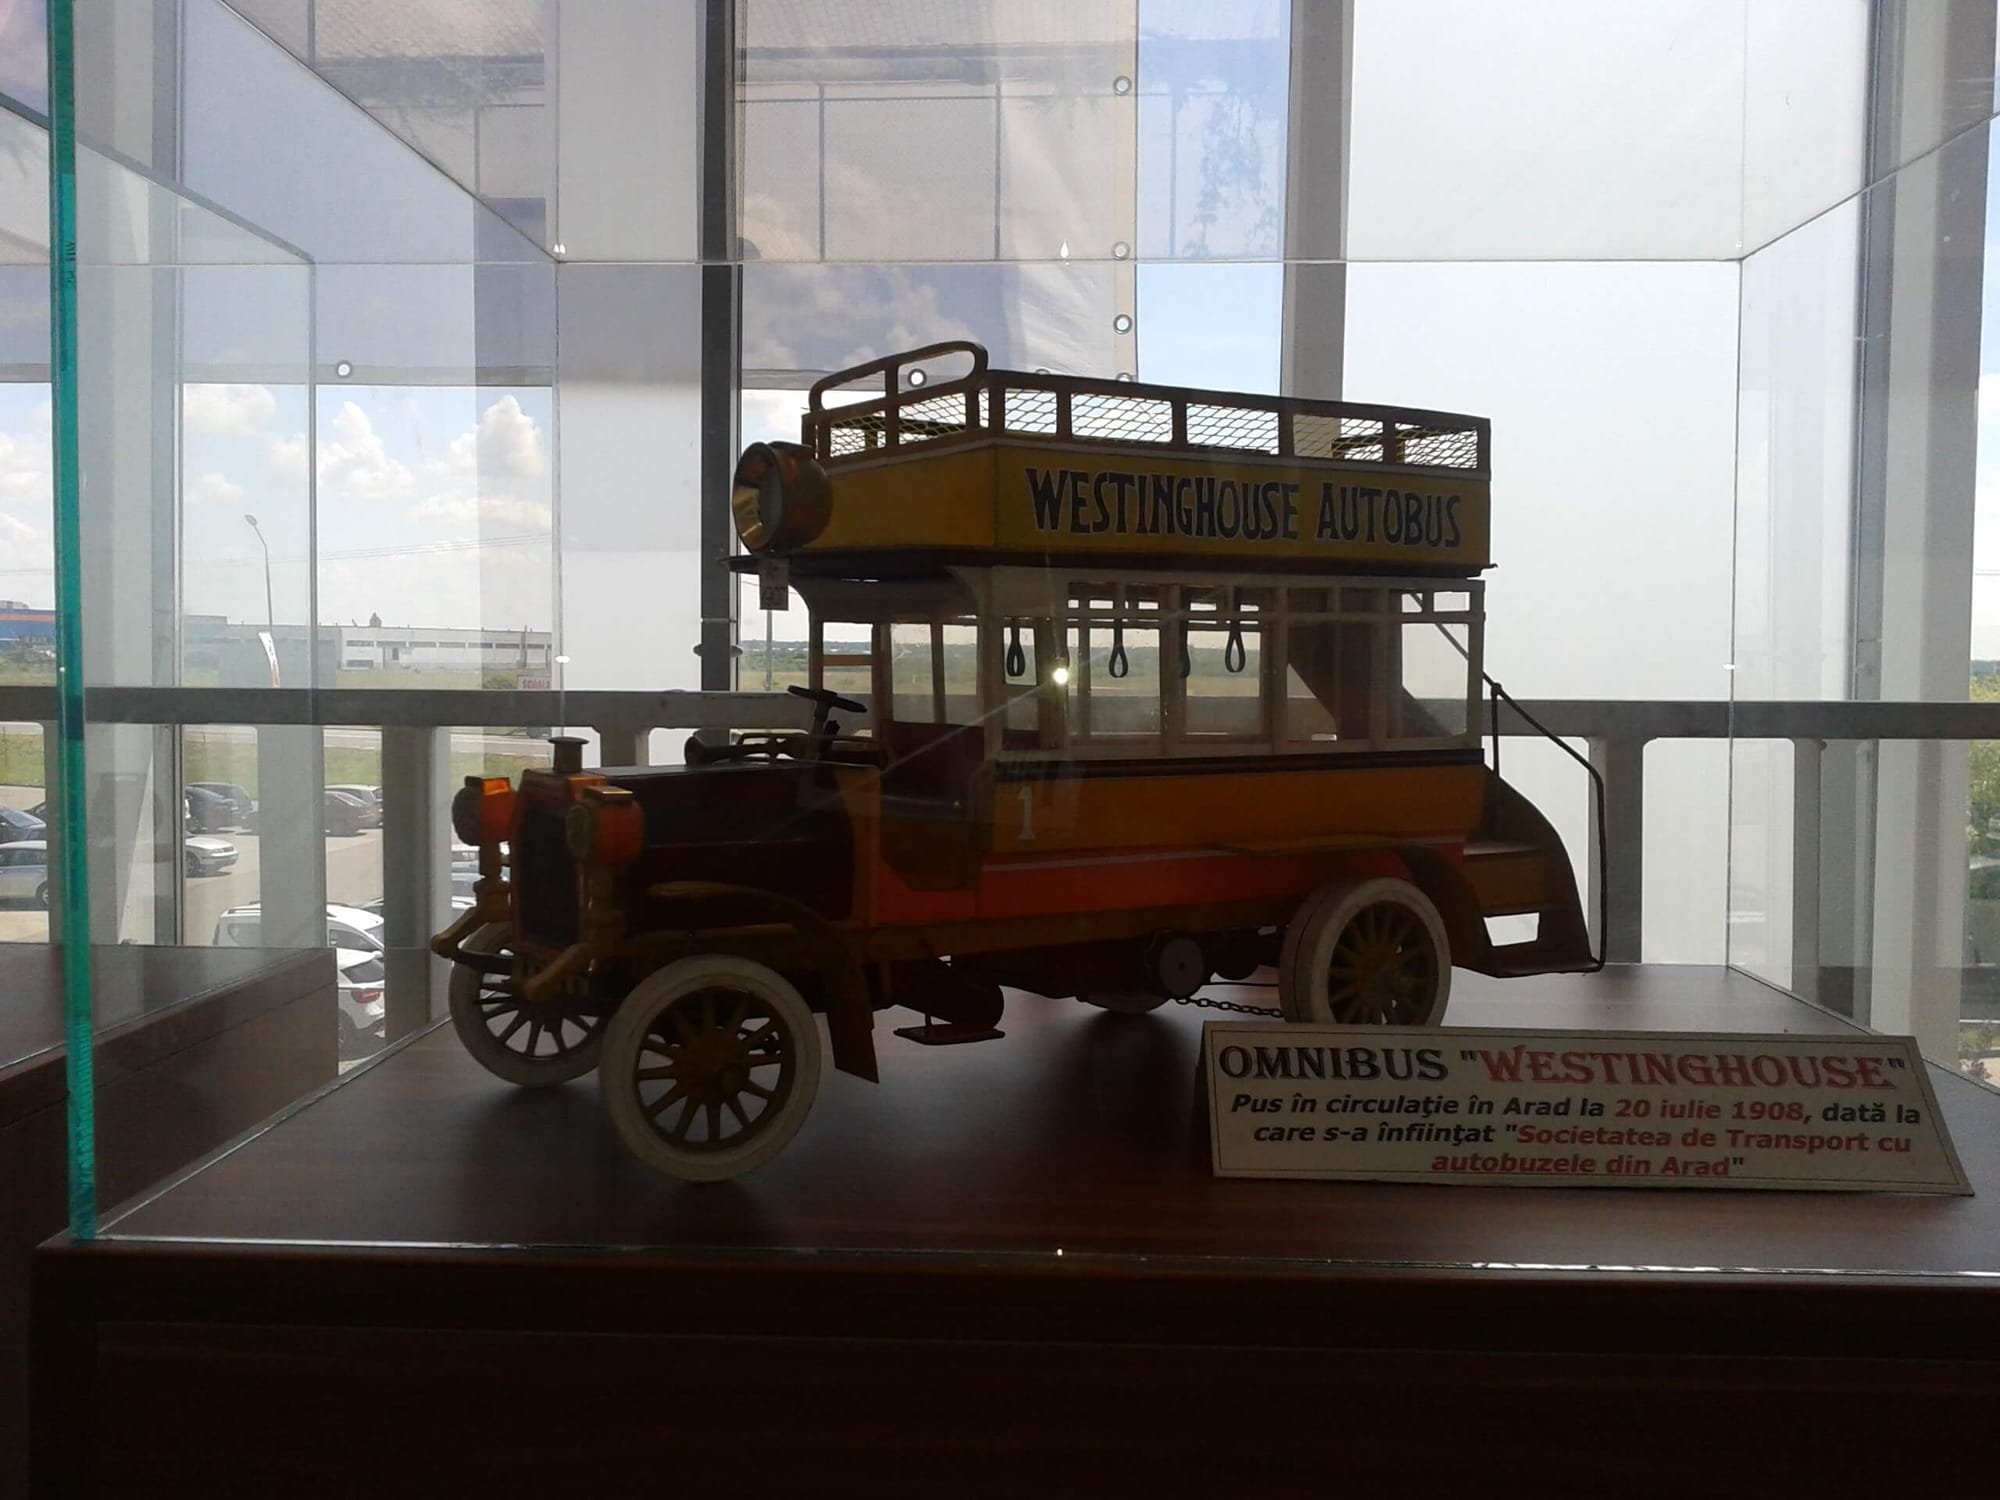 Omnibus Westinghouse din dotarea Societății de transport cu autobuzele din Arad (1908)